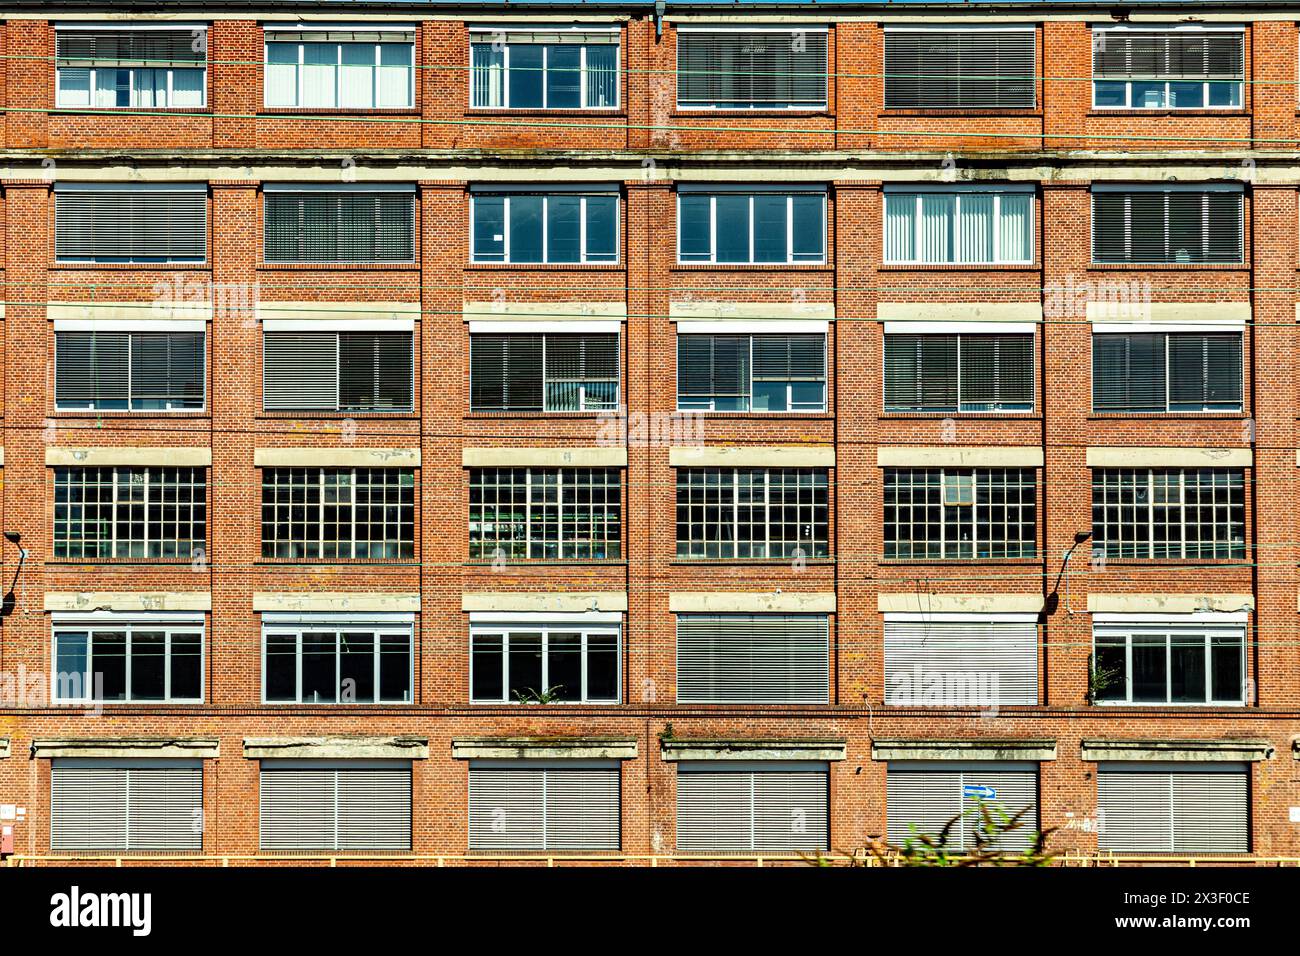 facciata di un vecchio edificio in mattoni con diverse finestre e persiane, chiuse, opposte Foto Stock